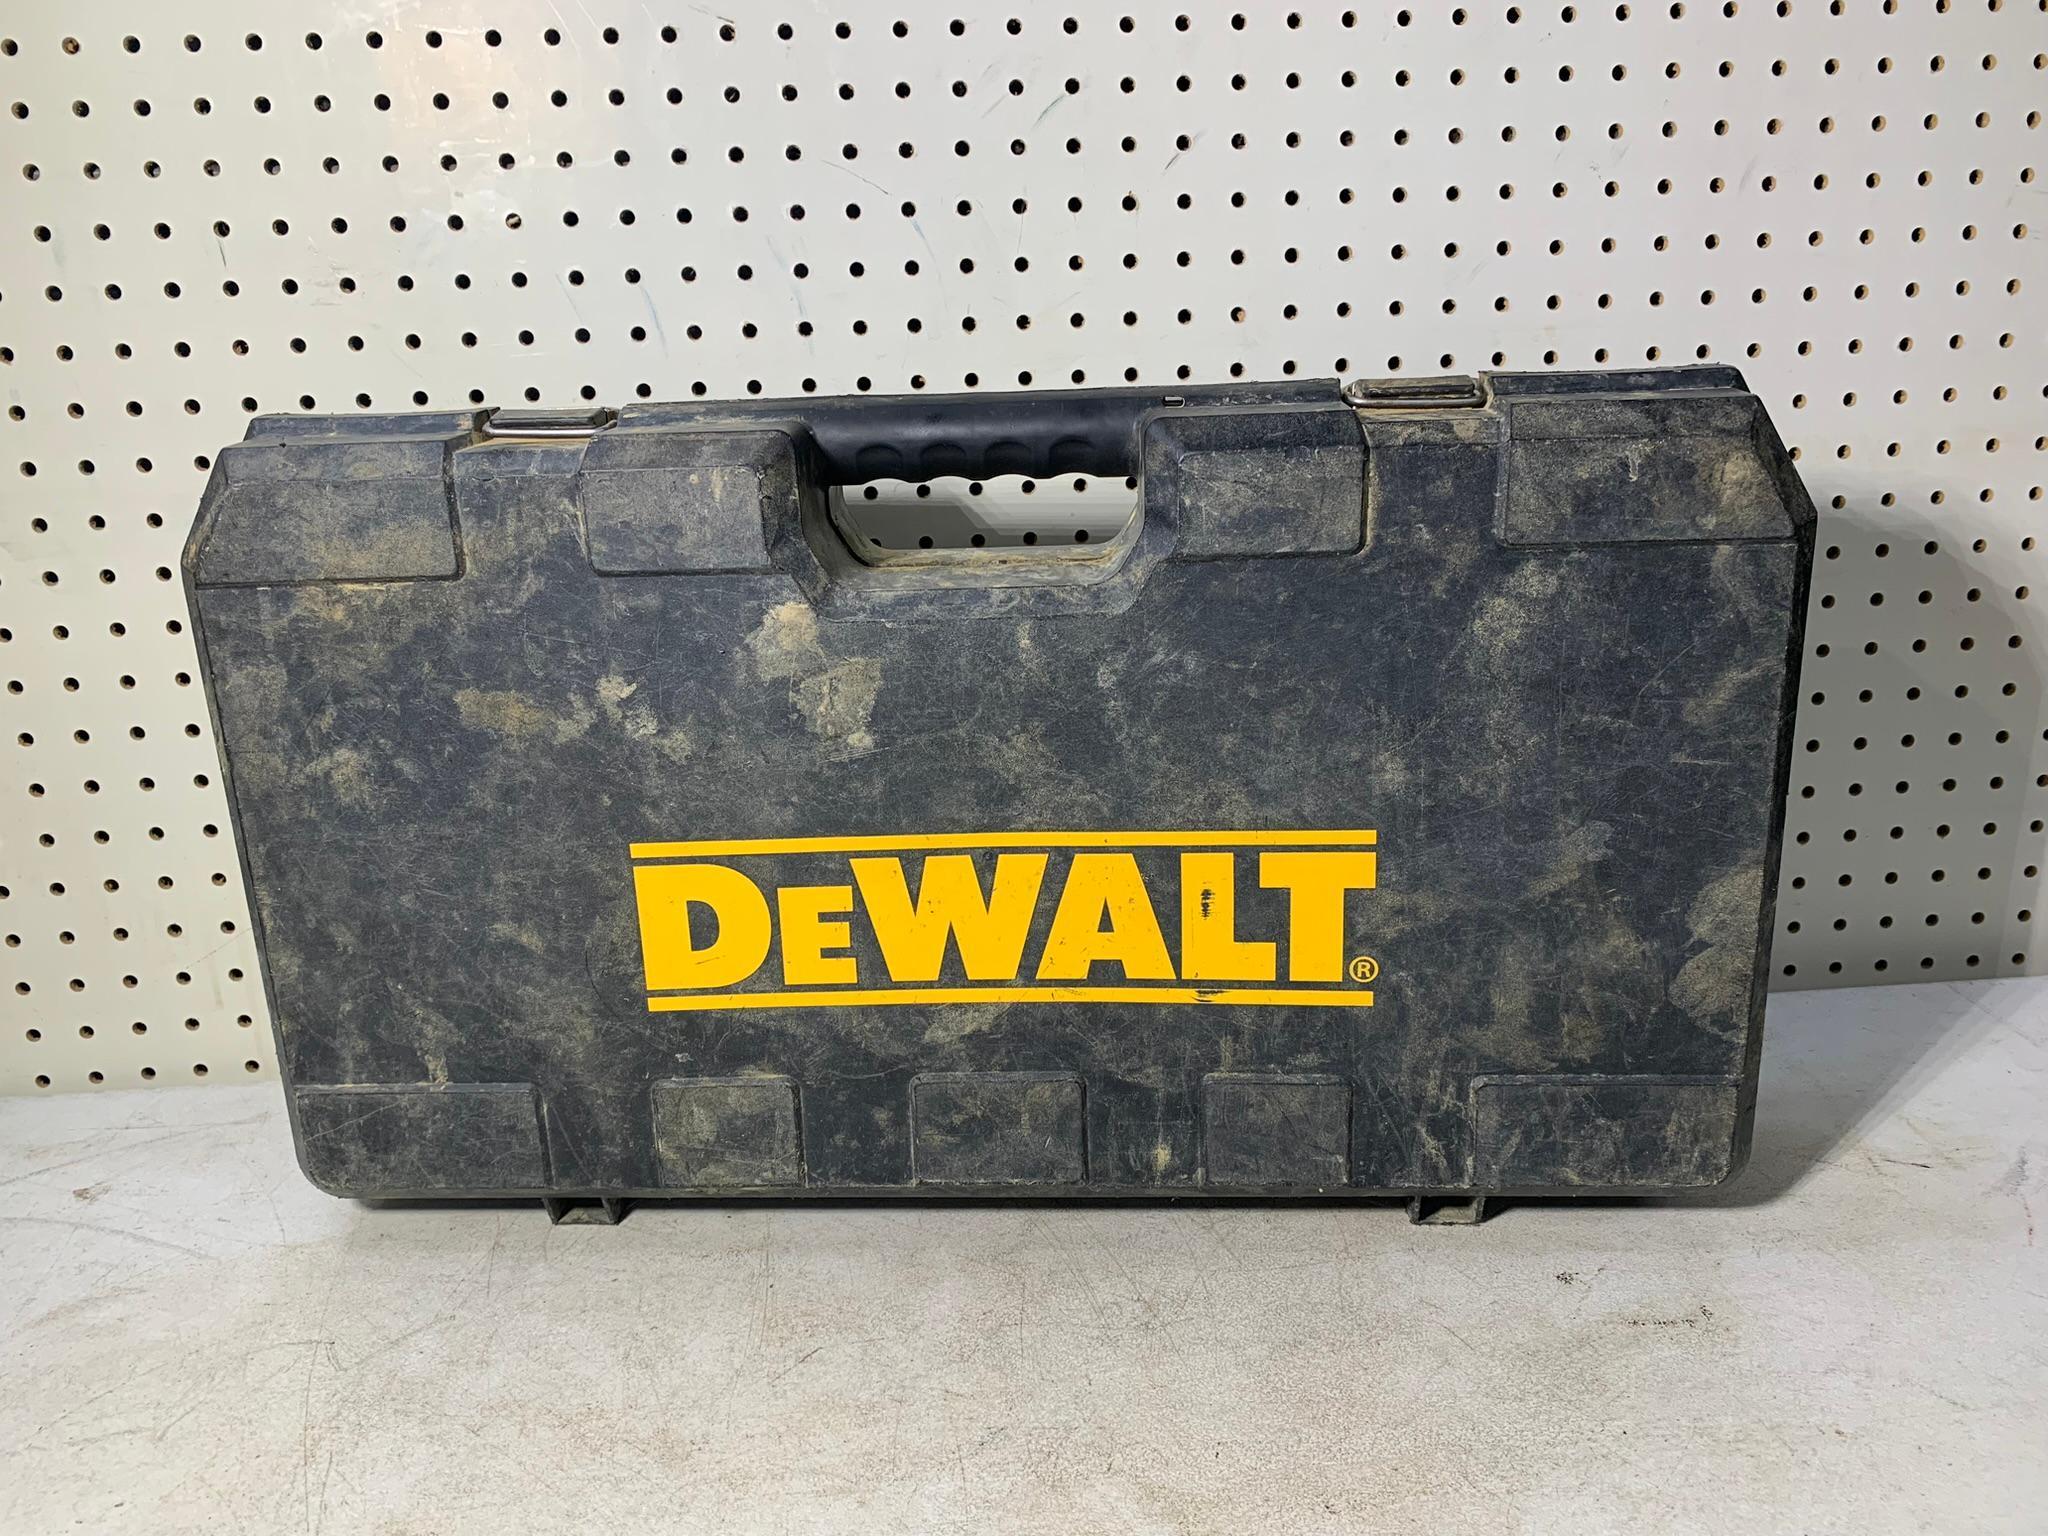 Dewalt Grease Gun with Case